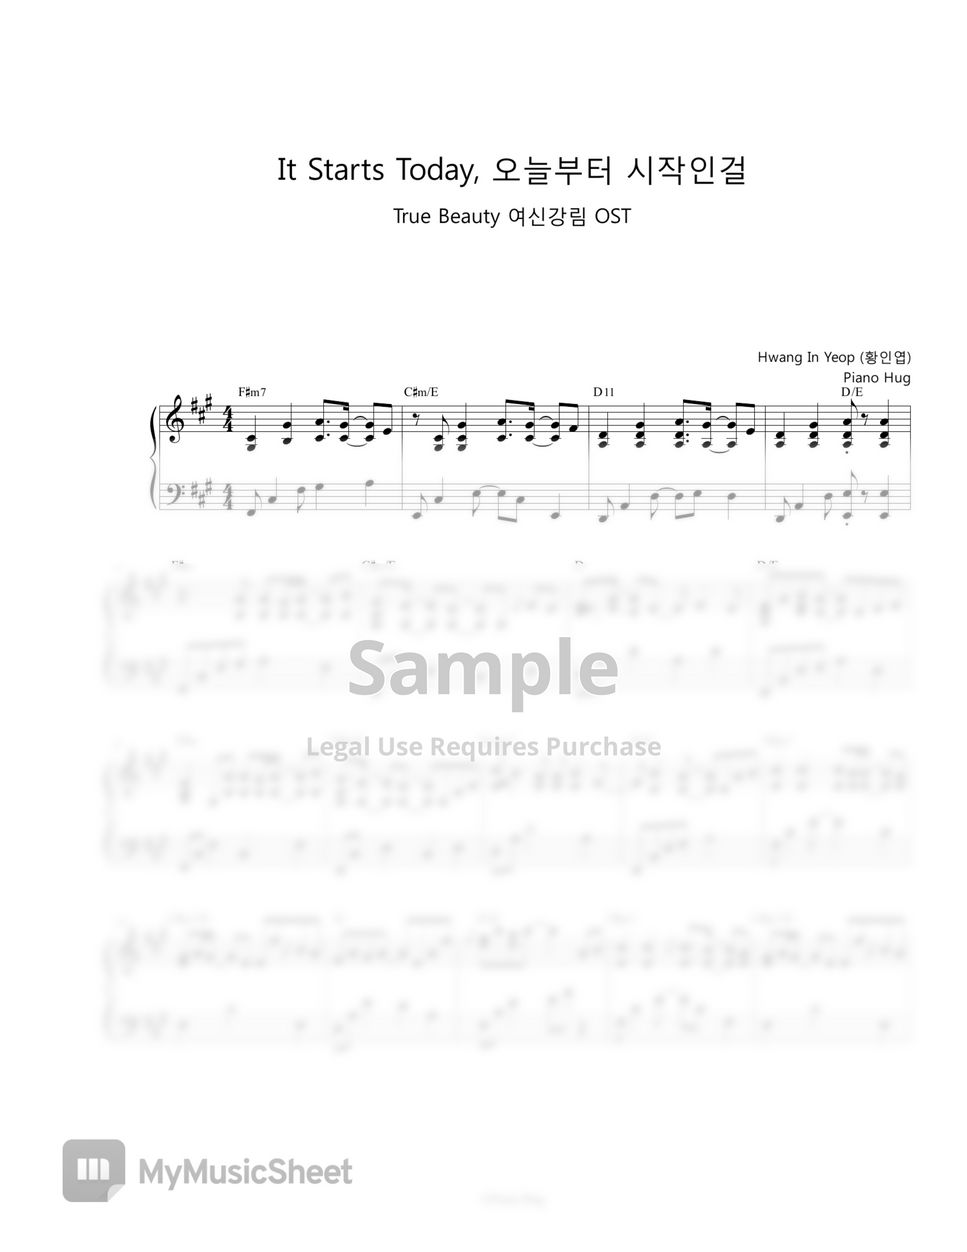 Hwang In Yeop (황인엽) - It Starts Today 오늘부터 시작인걸 (True Beauty OST) by Piano Hug